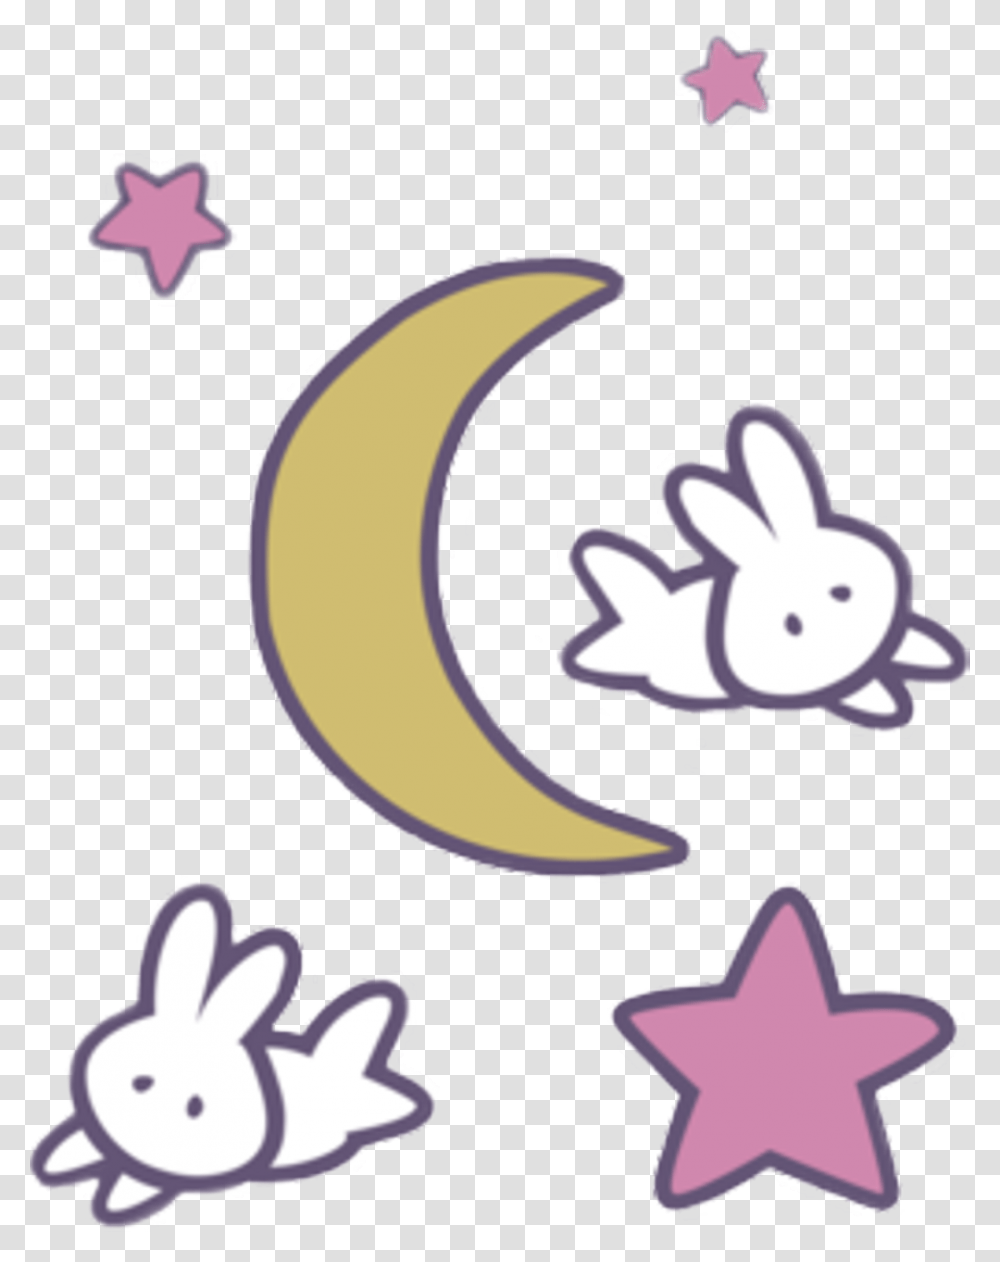 Sailormoon Anime Kawaii Moon Stars Rabbits Rabbit Sailor Moon Bunny, Nature, Outdoors, Outer Space, Night Transparent Png